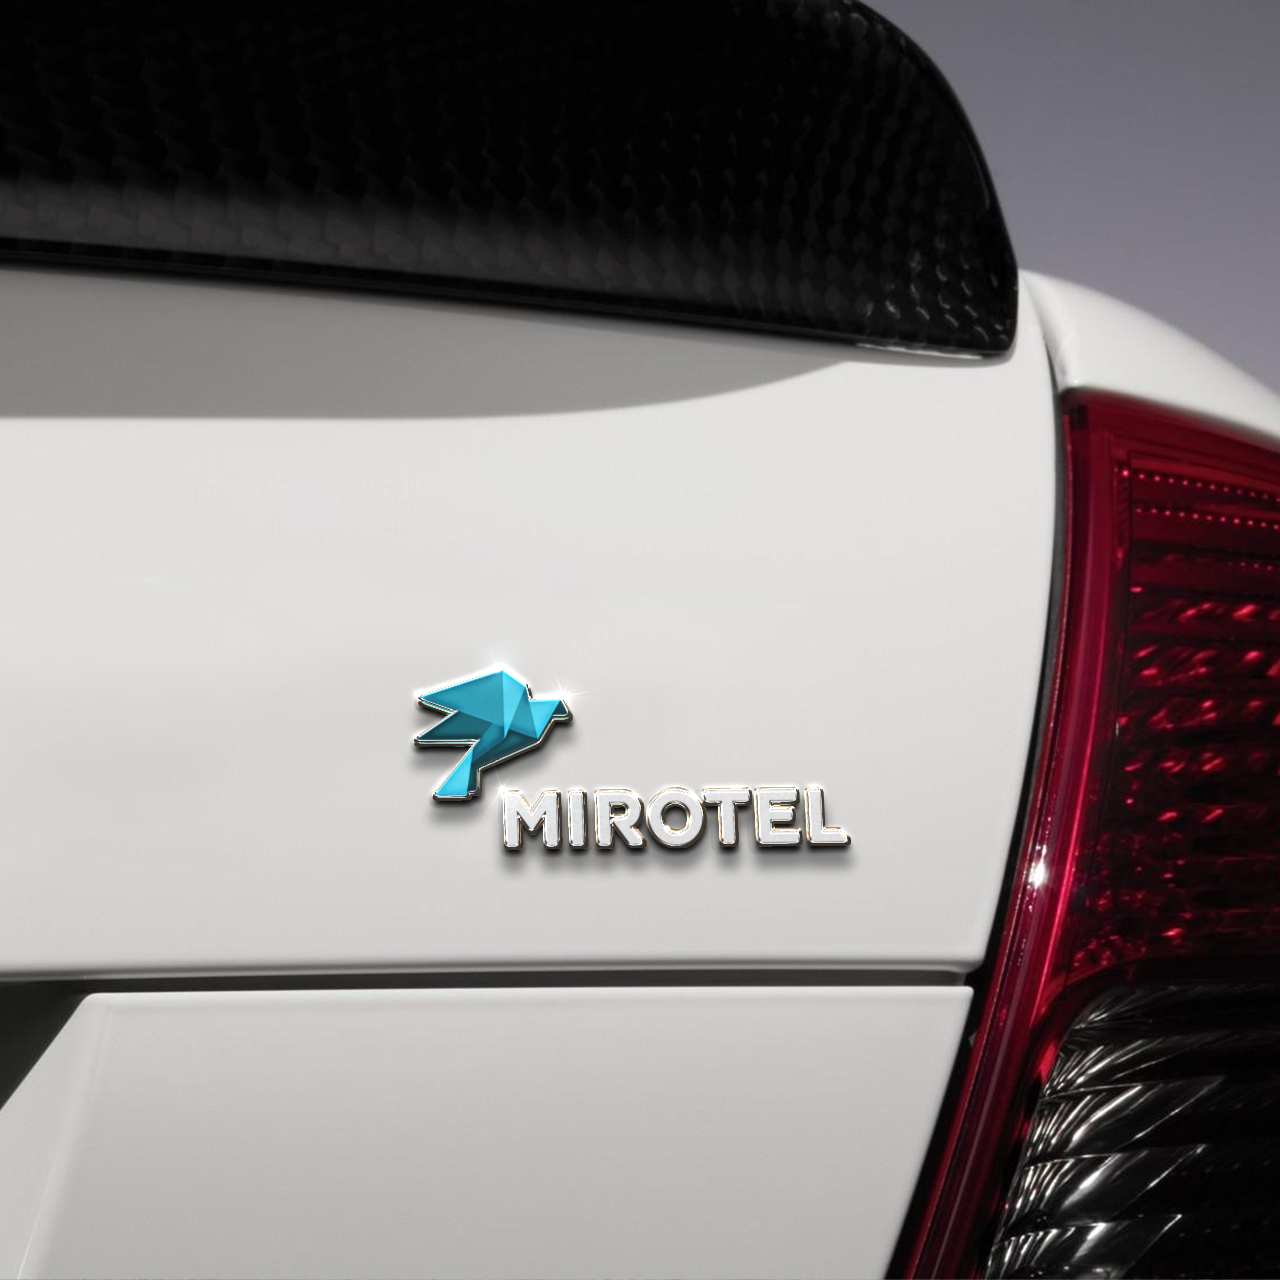 Айдентика Mirotel на примере брендирования автомобиля